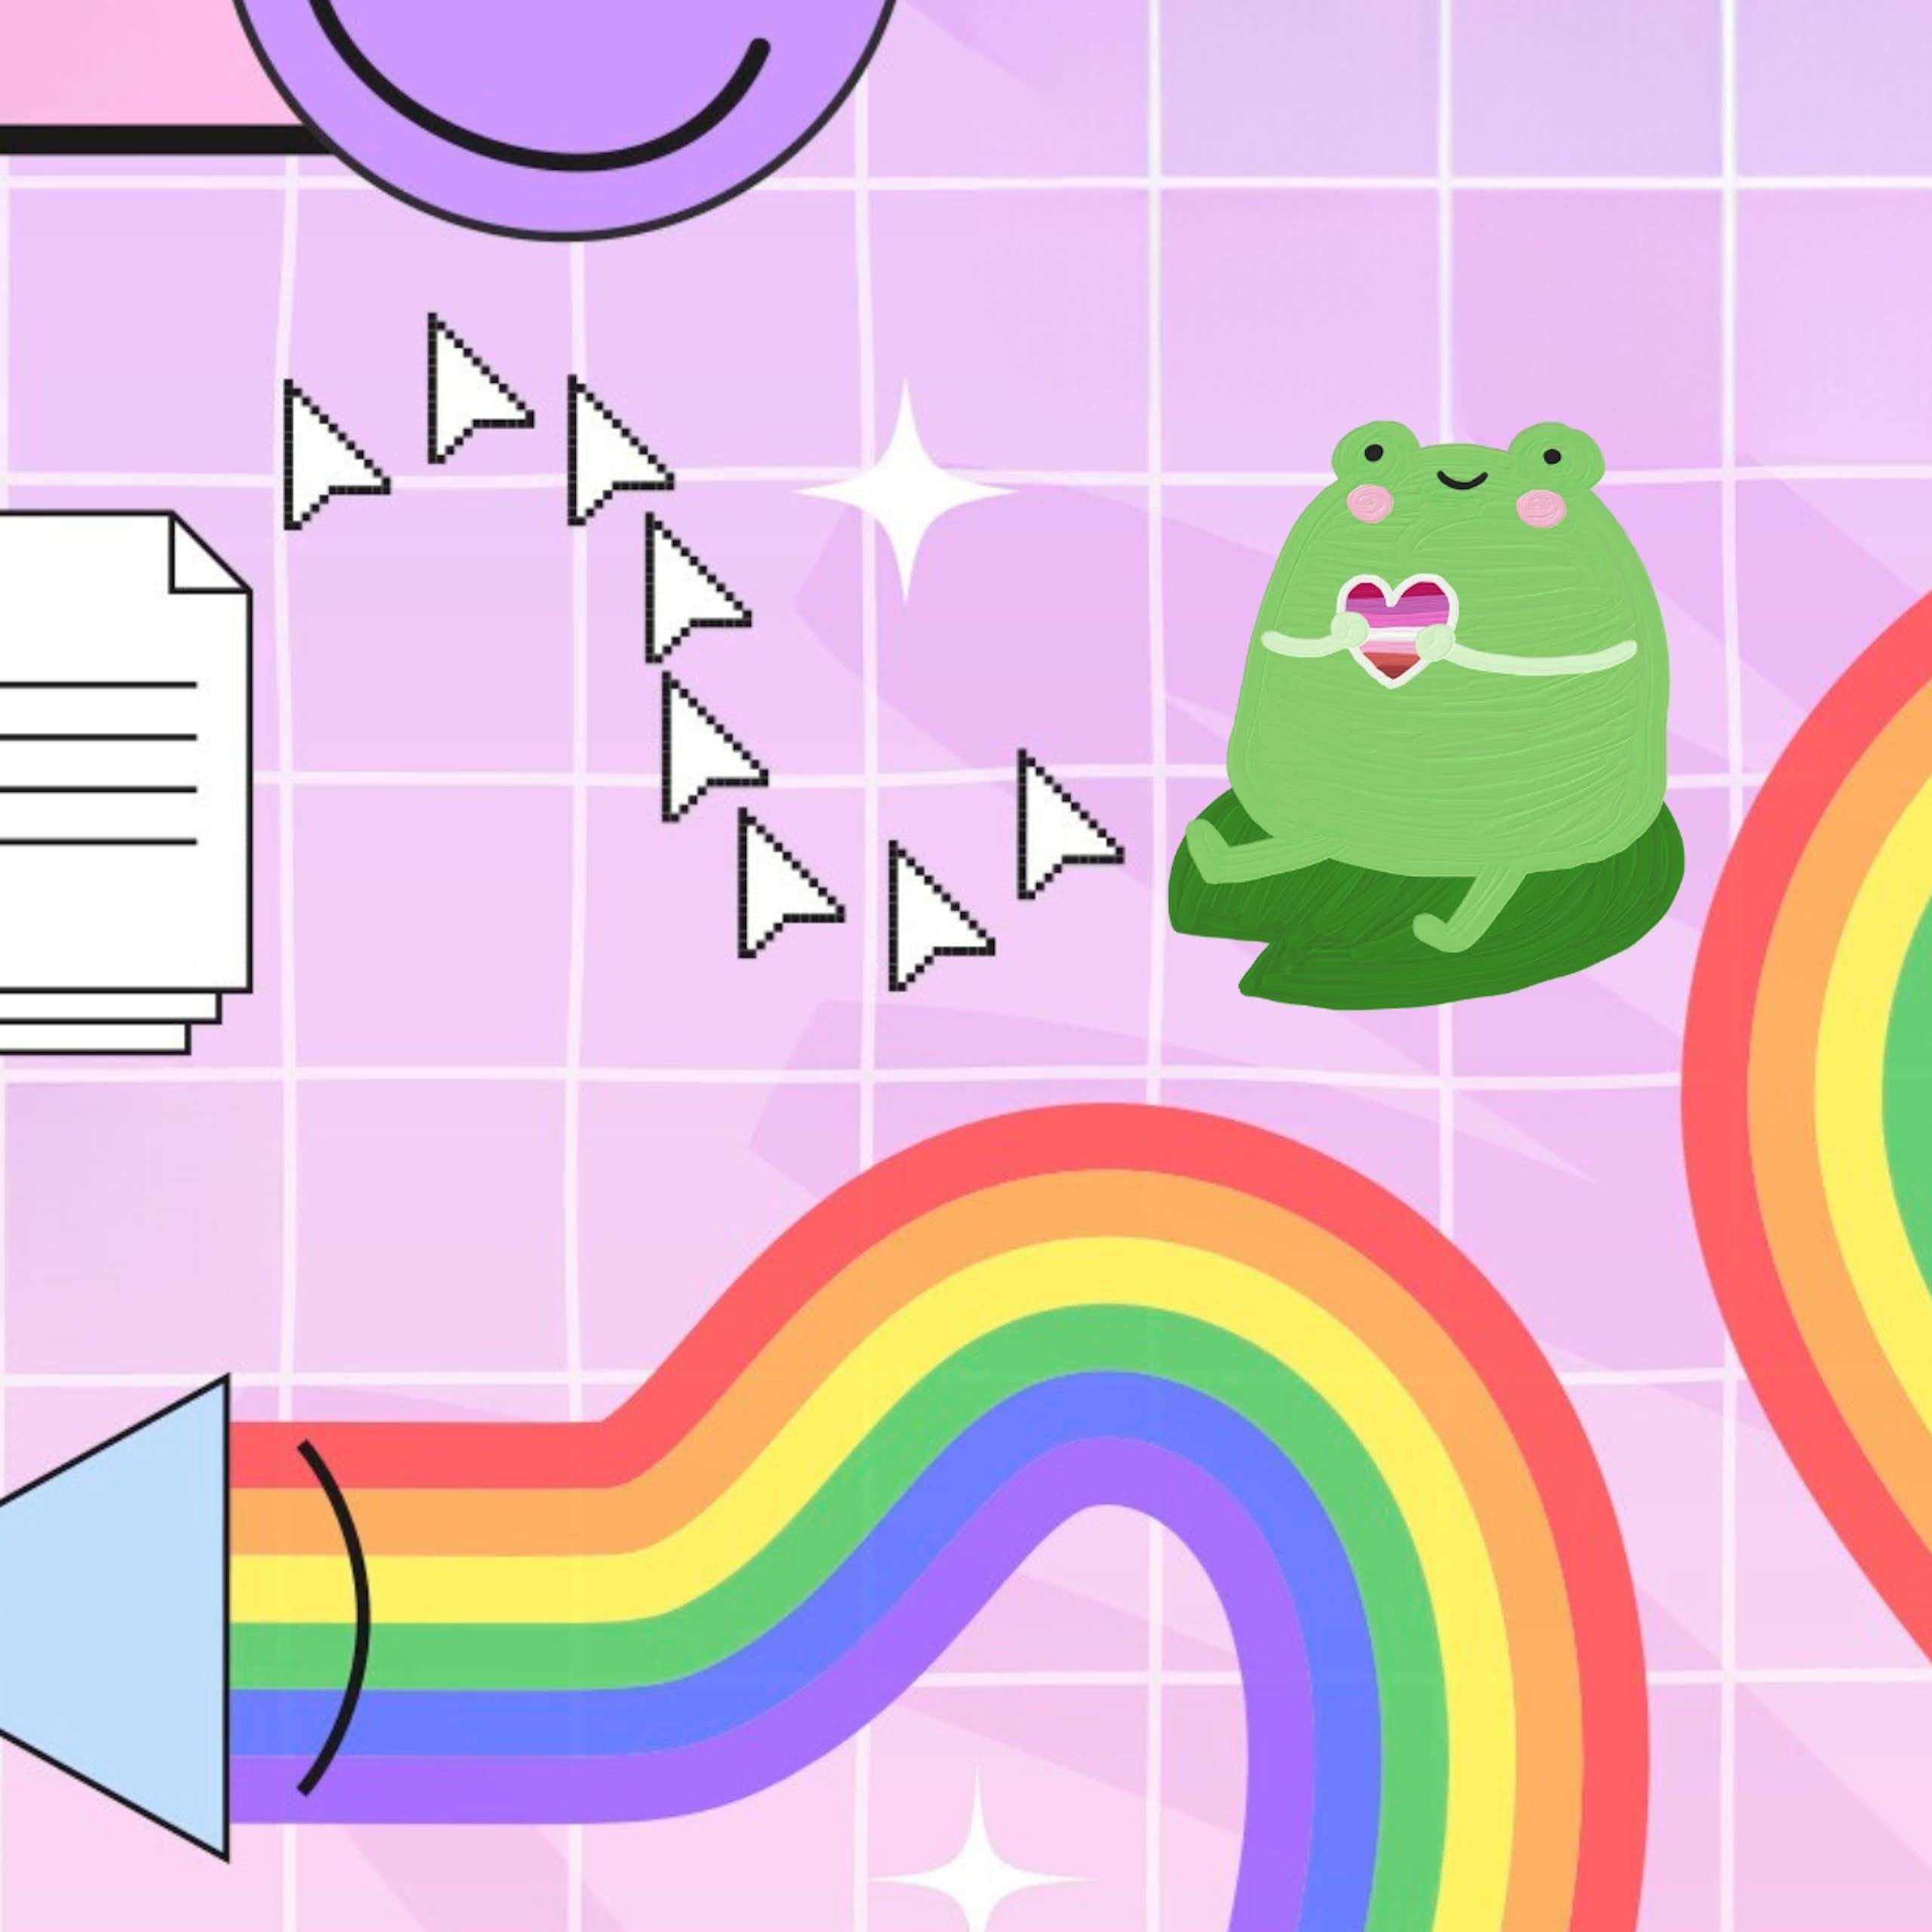 Queer internet symbols collaged together